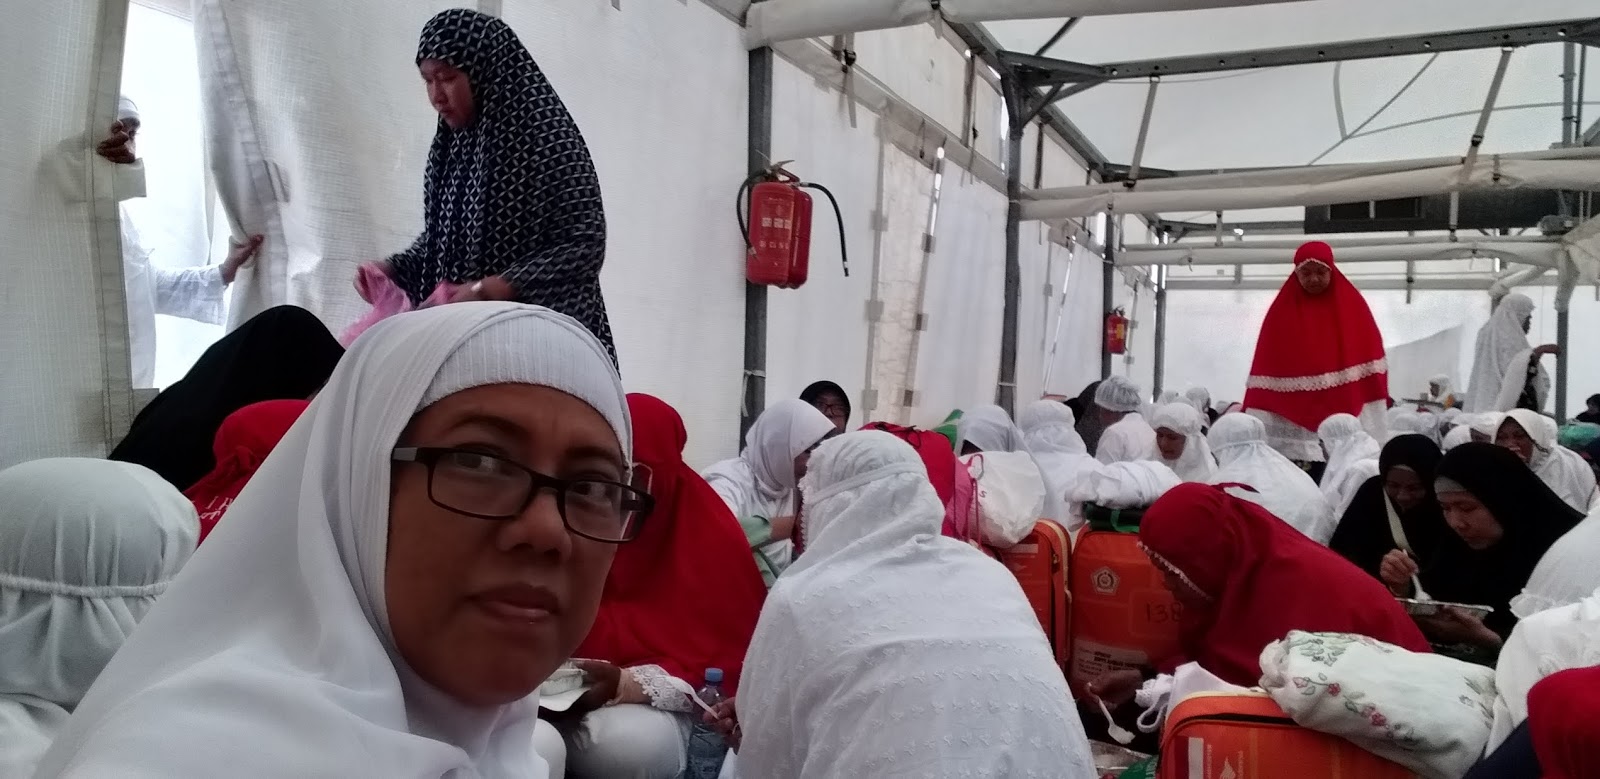 Cuanto cuesta ir al hajj desde españa